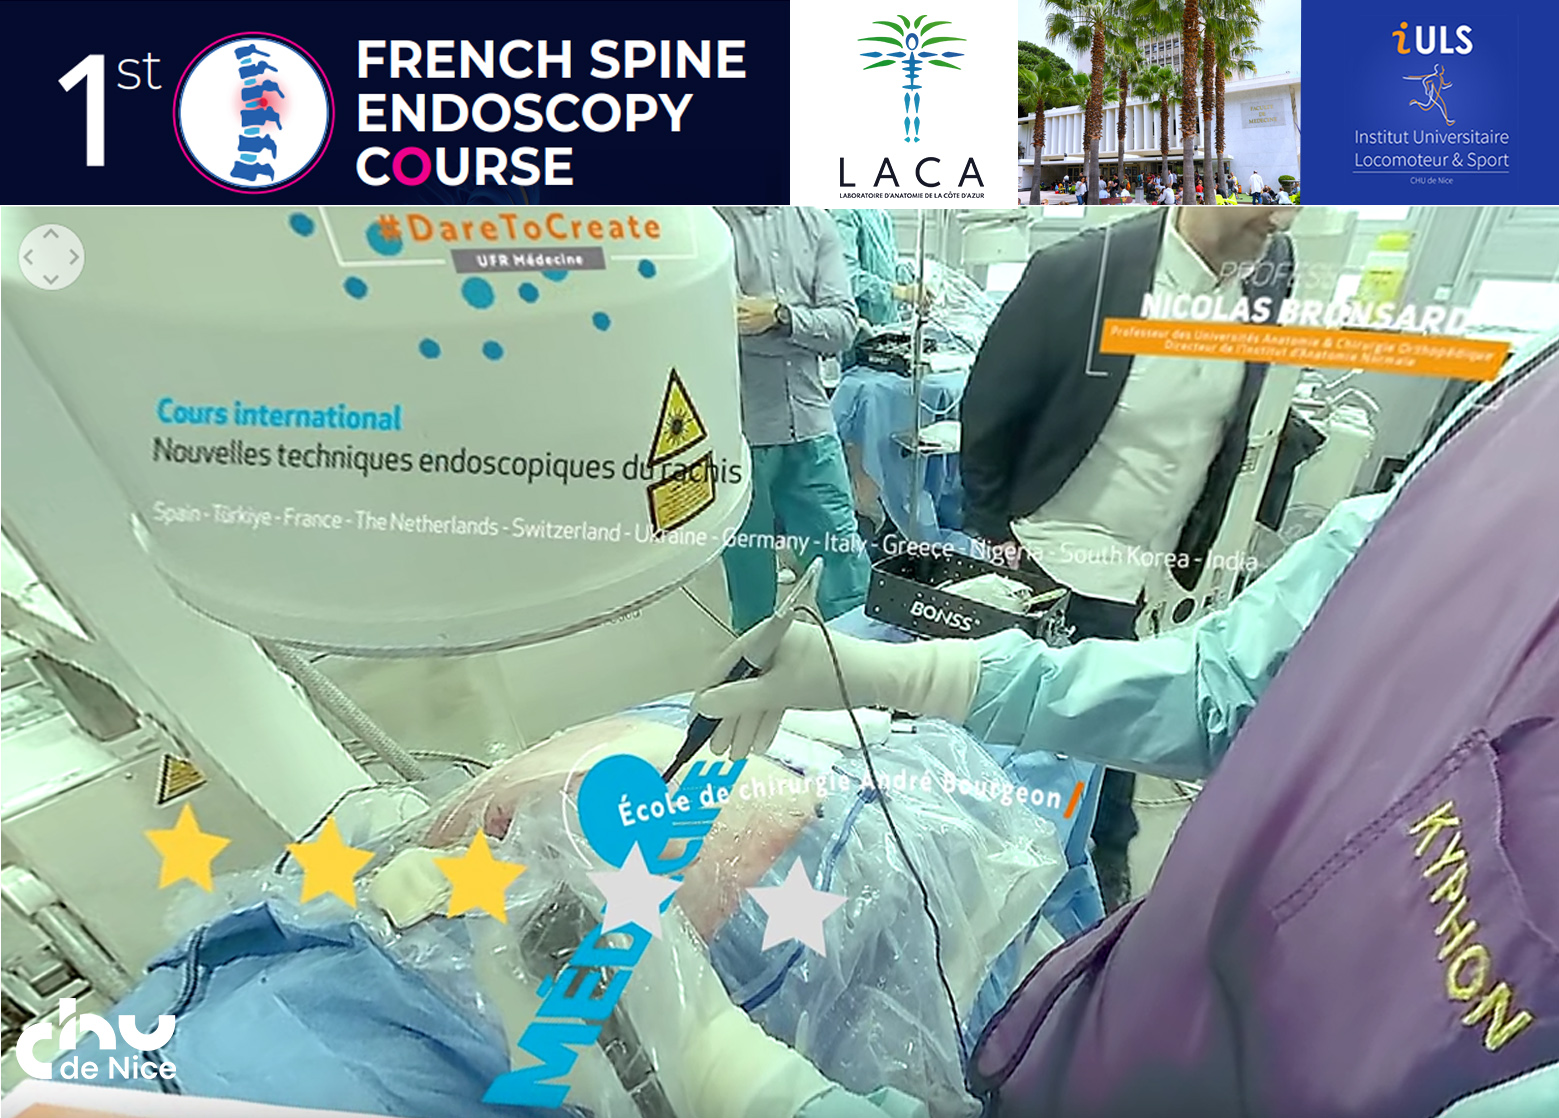 Immersion à 360° au Laboratoire d'Anatomie lors du French Spine